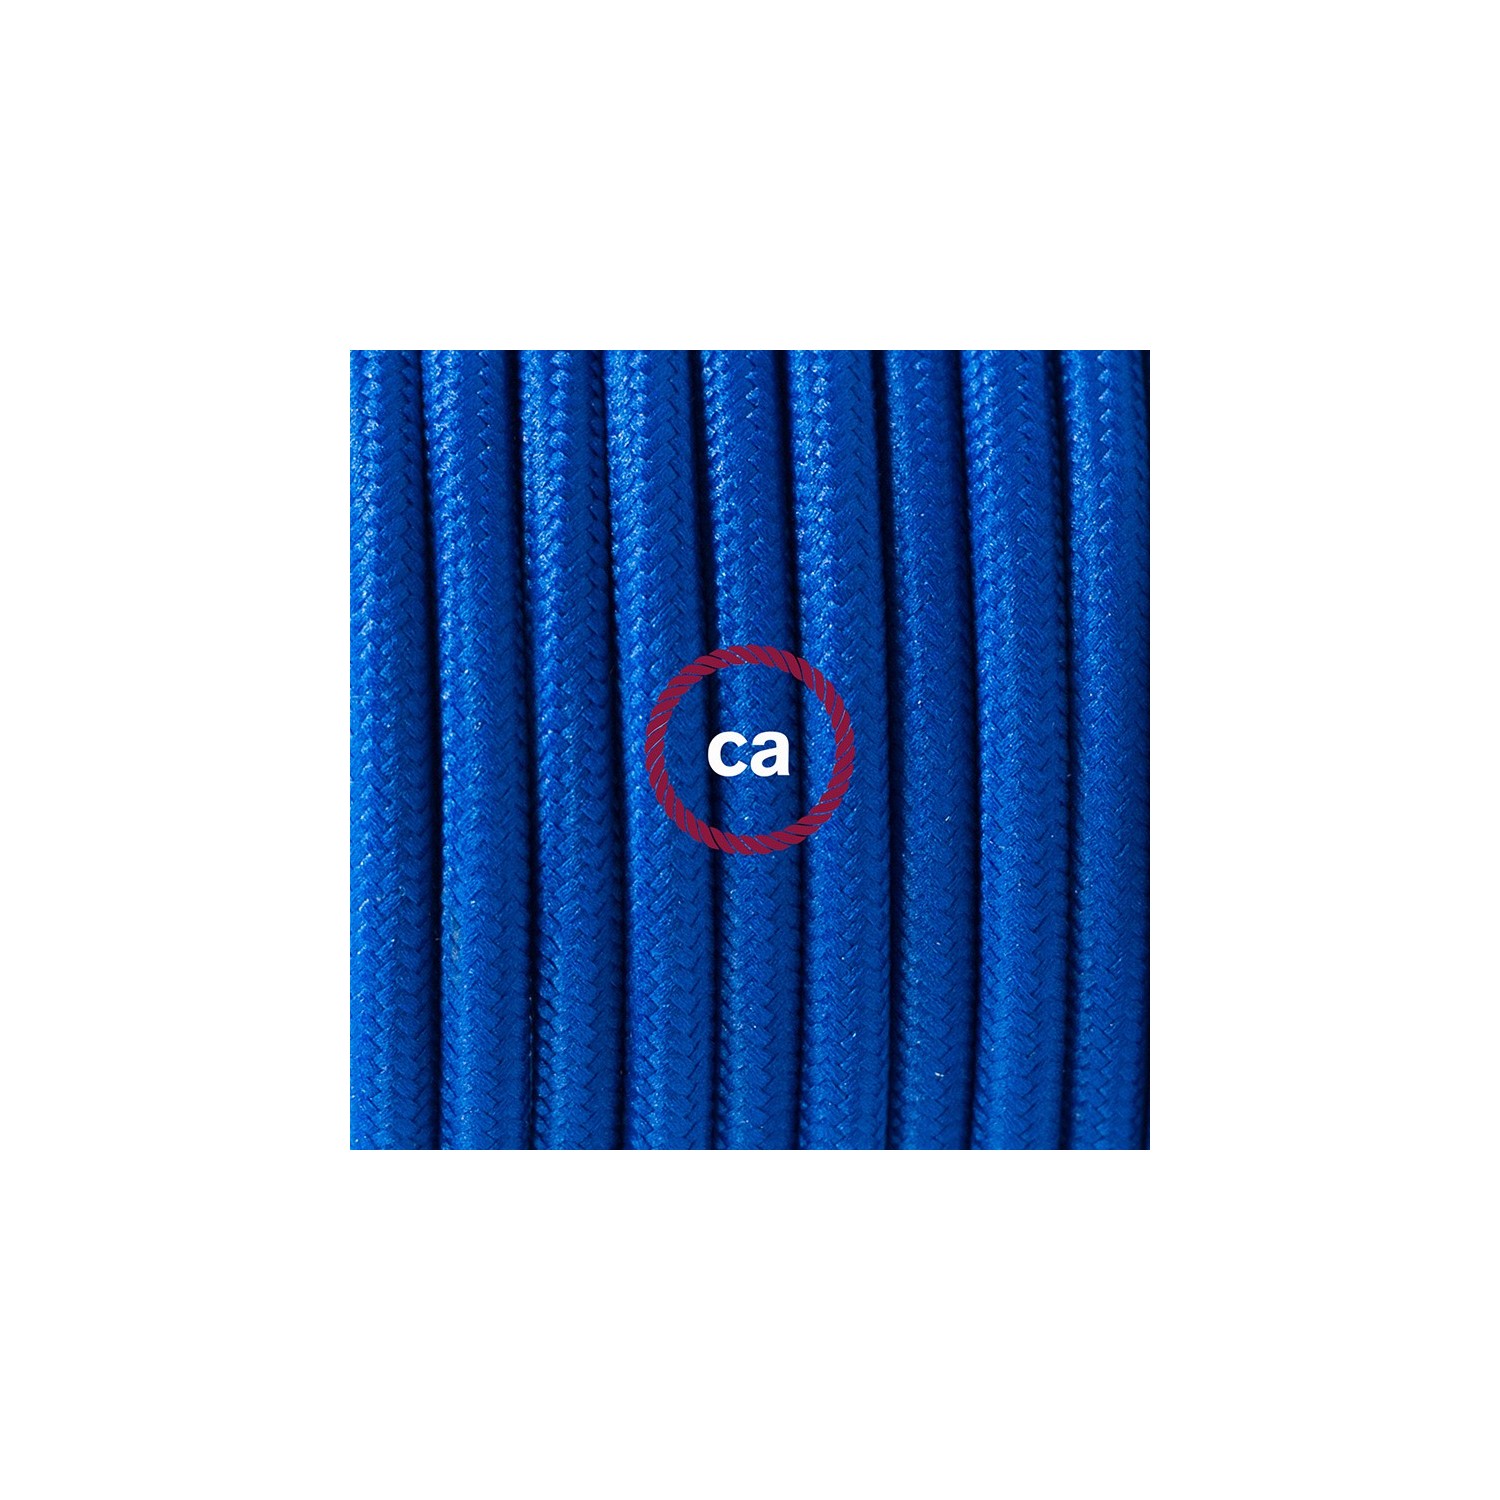 Ronde flexibele textielkabel van viscose met schakelaar en stekker. RM12 - blauw 1,80 m.